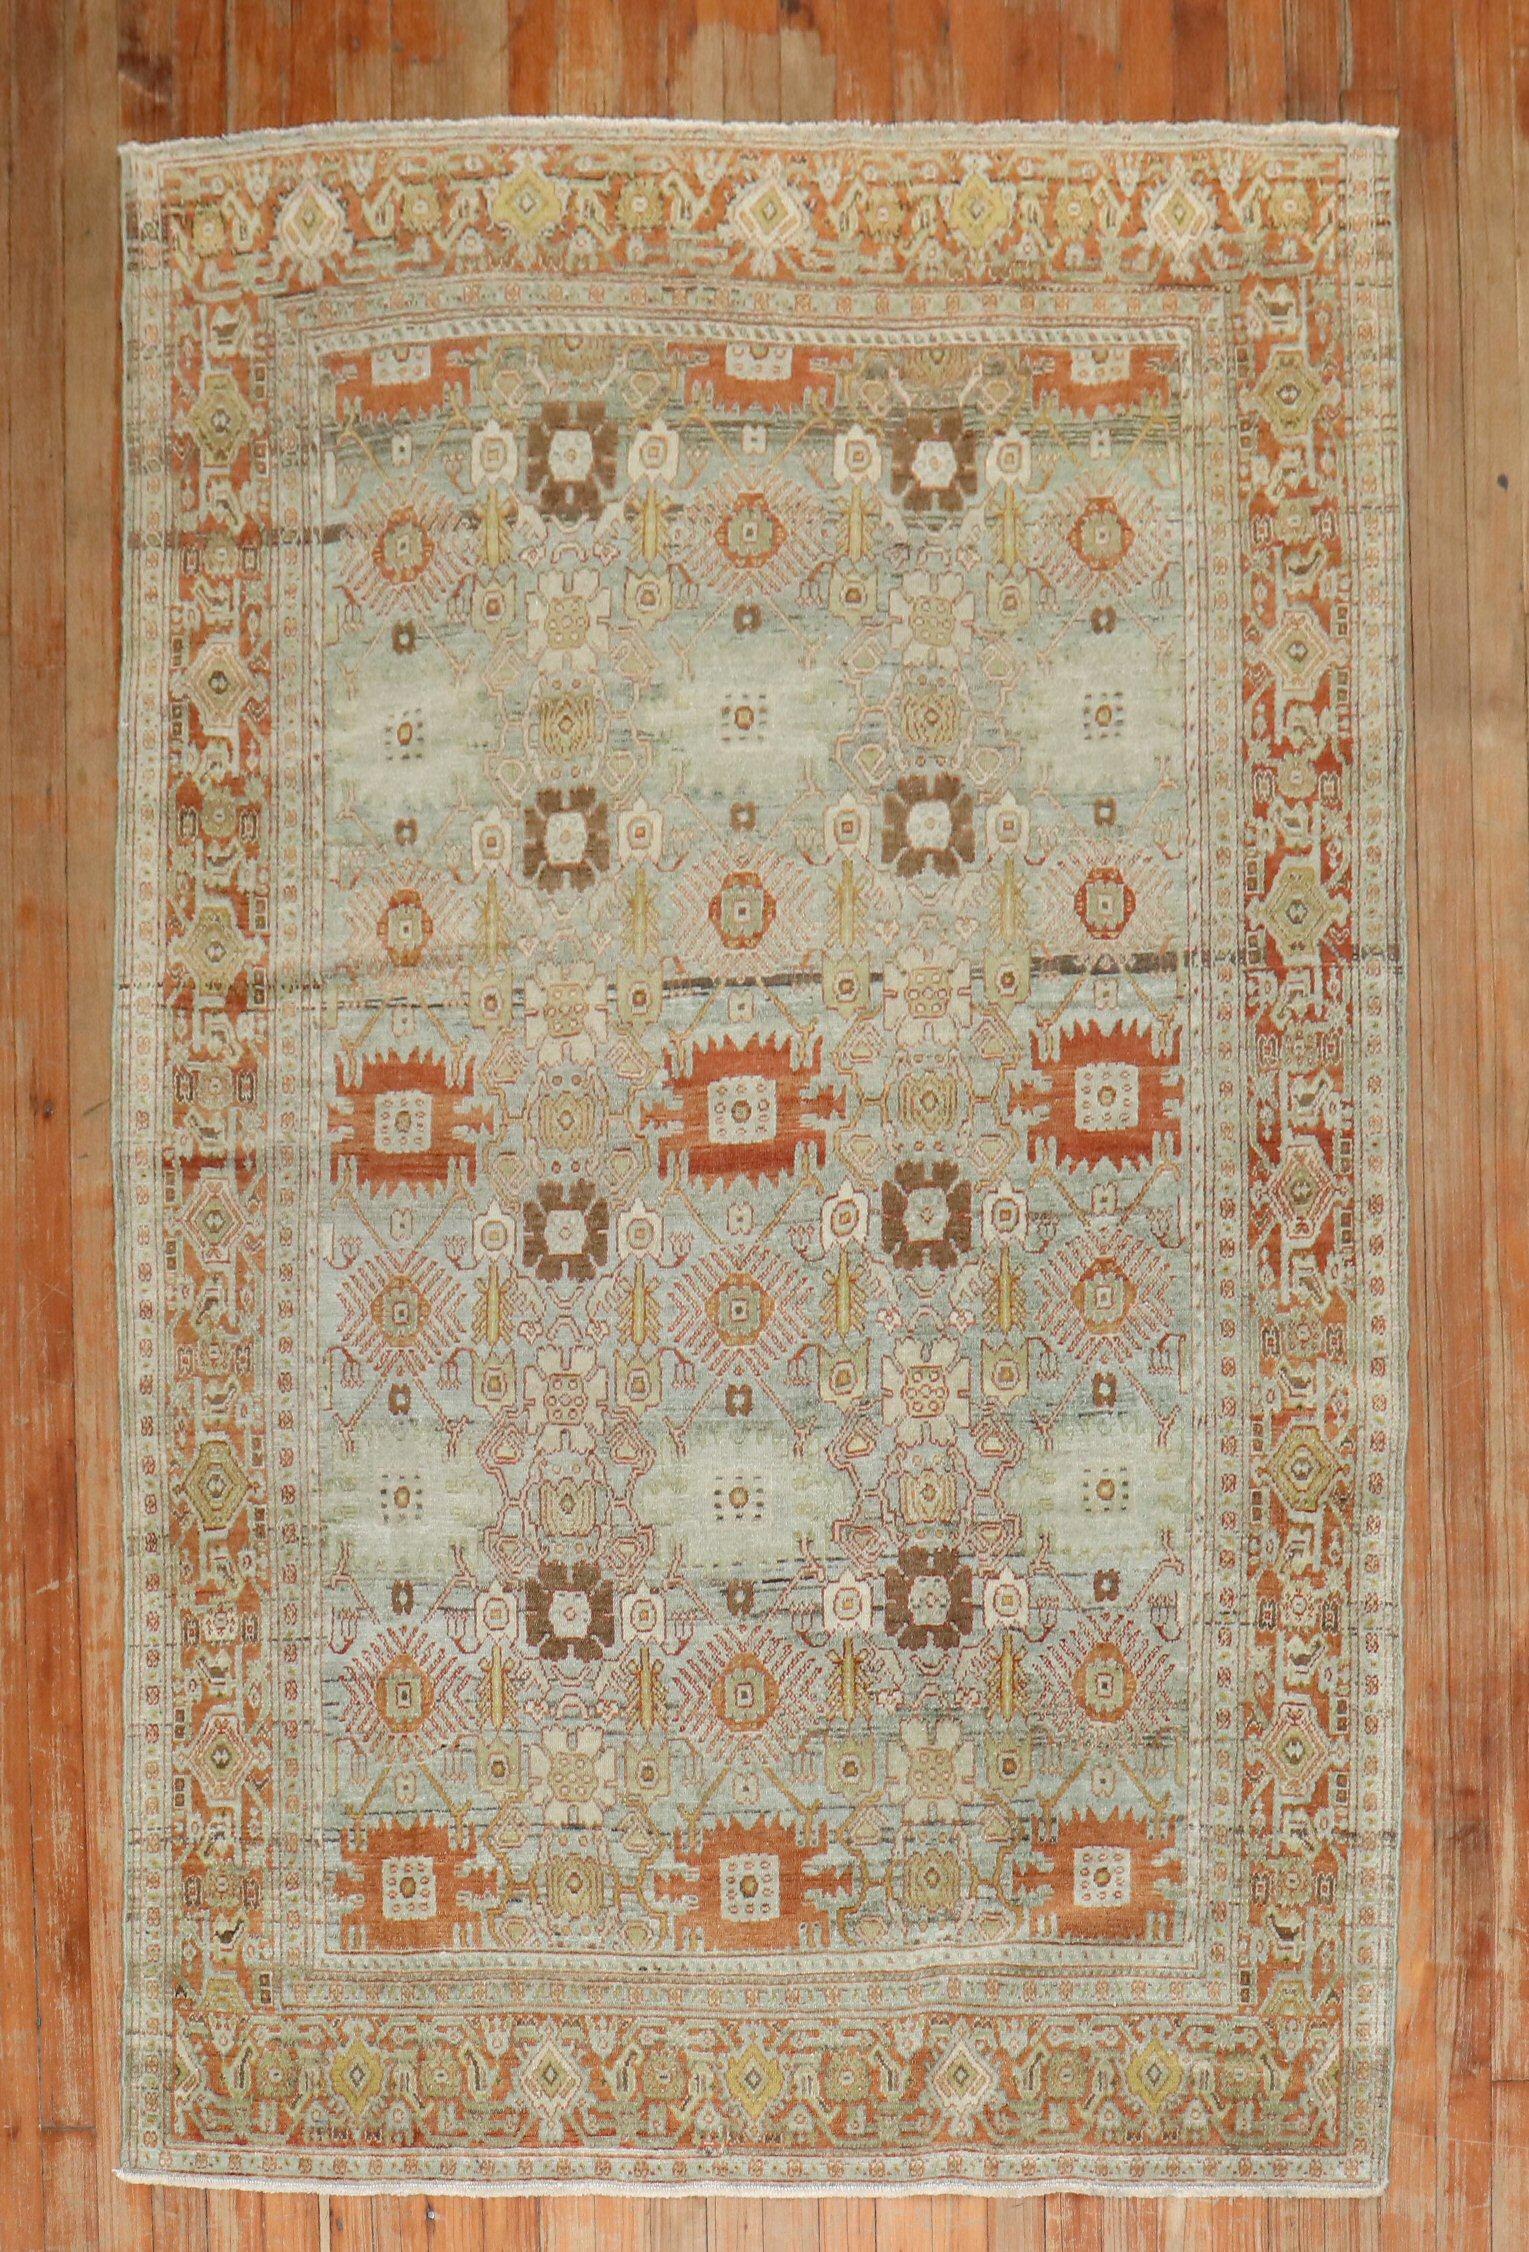 
CIRCA 1920 warm gefärbter antiker persischer Senneh-Teppich

Einzelheiten
Teppich nein.	j3358
Größe	4' 4